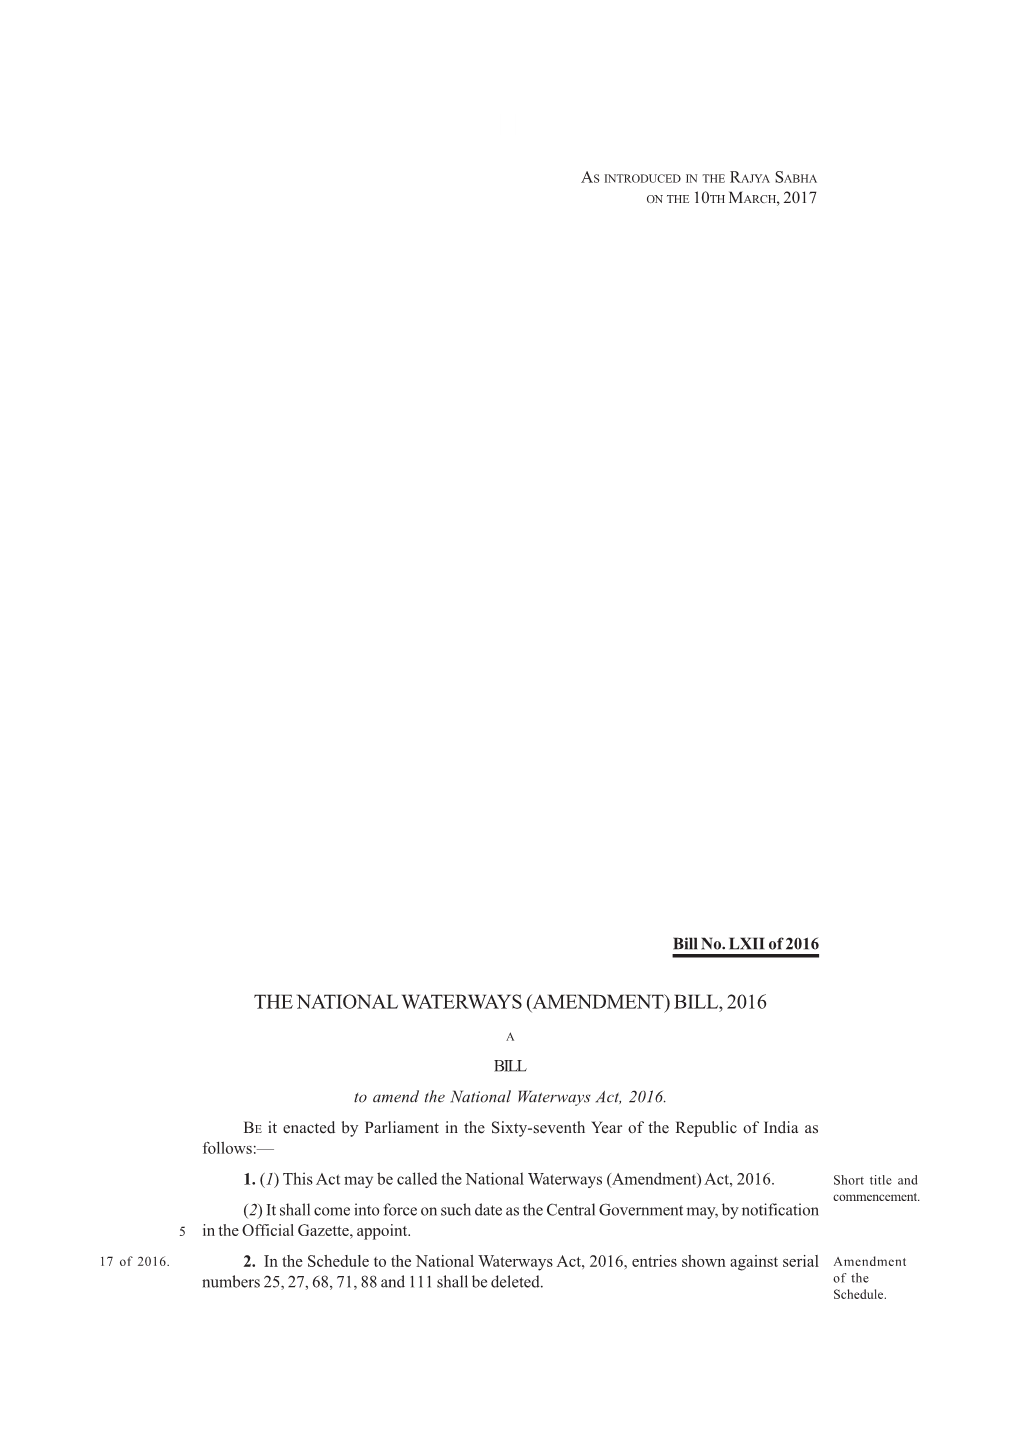 The National Waterways (Amendment) Bill, 2016